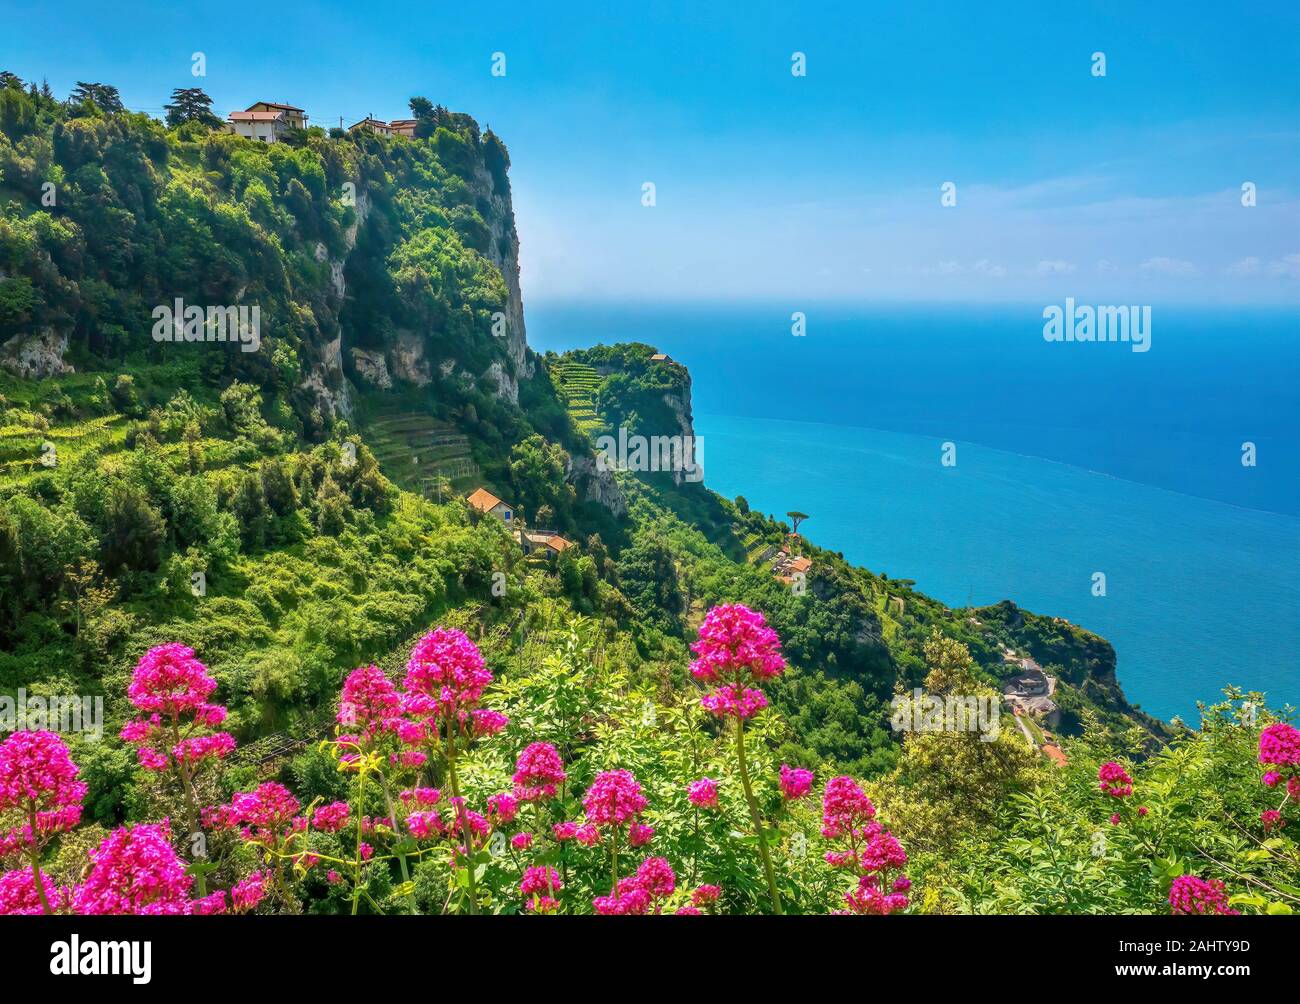 Paysage méditerranéen spectaculaire le long de la côte amalfitaine en Italie, avec des collines abruptes et des falaises rocheuses couvertes de végétation luxuriante et de vignobles en terrasses. Banque D'Images